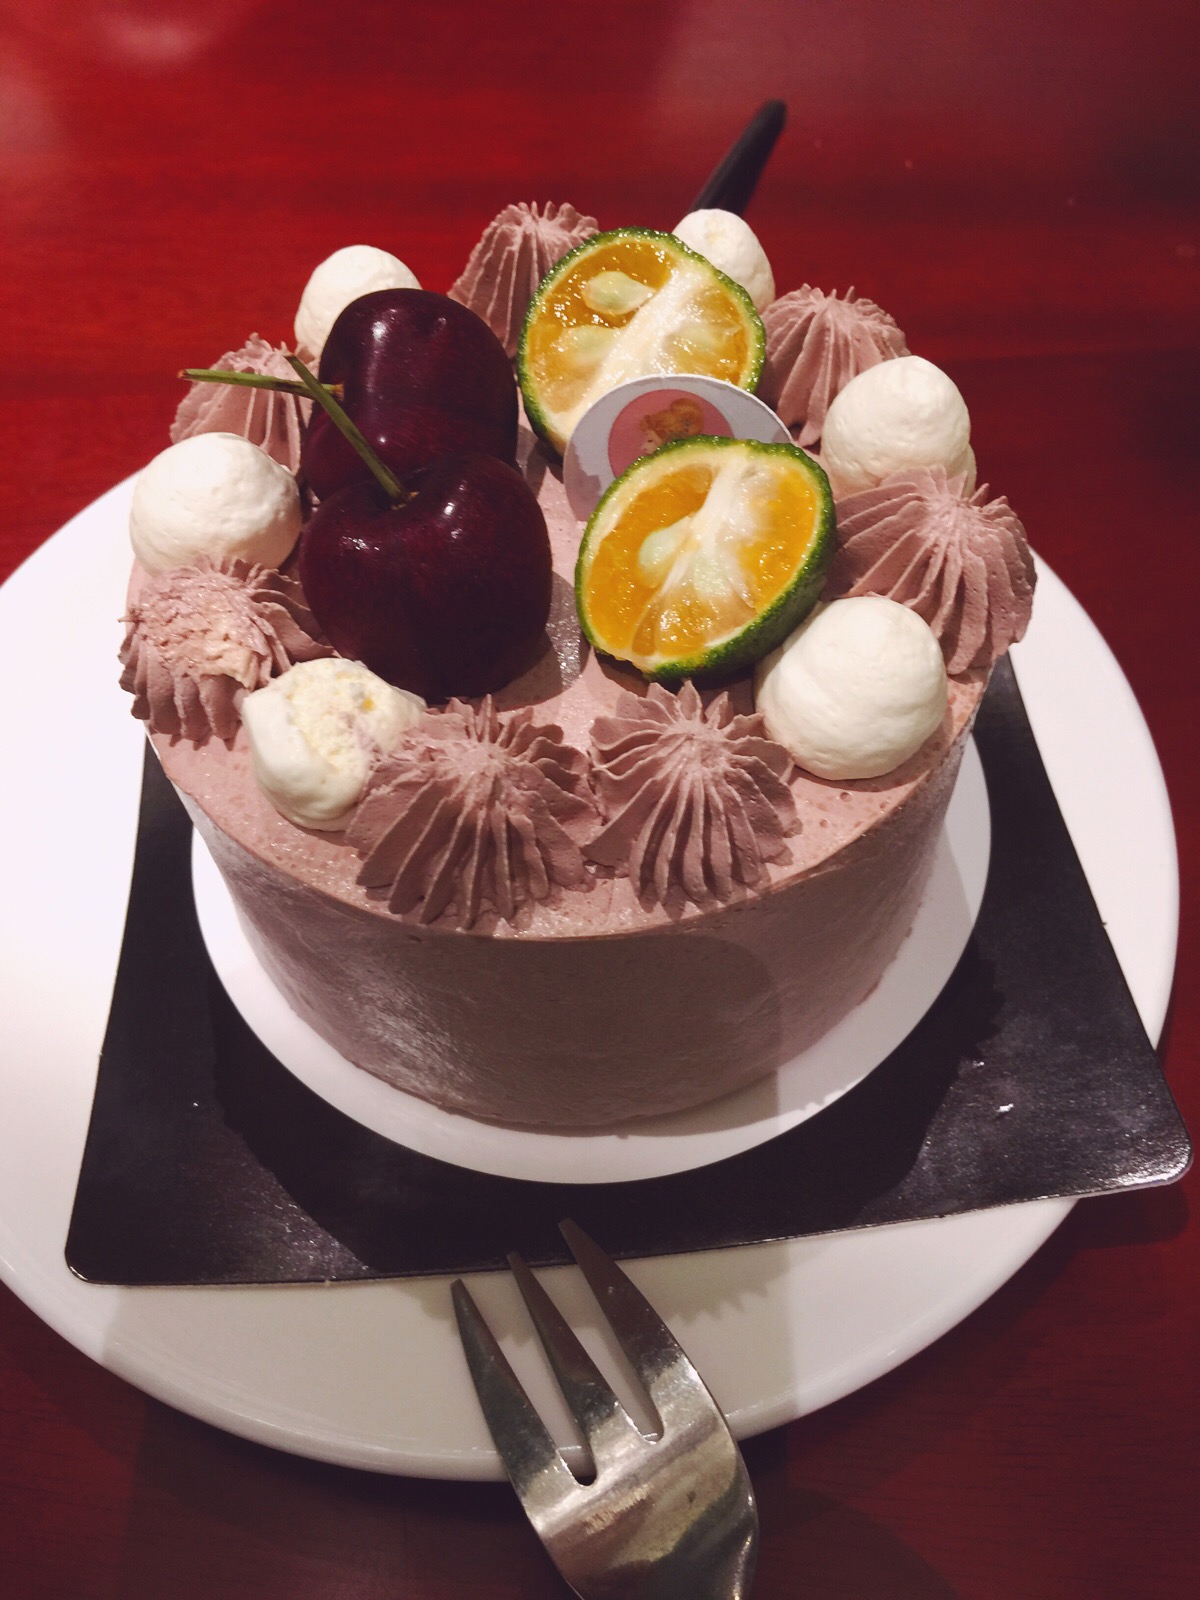 奶油水果蛋糕——我的生日我做主_奶油水果蛋糕_浓咖啡淡心情的日志_美食天下